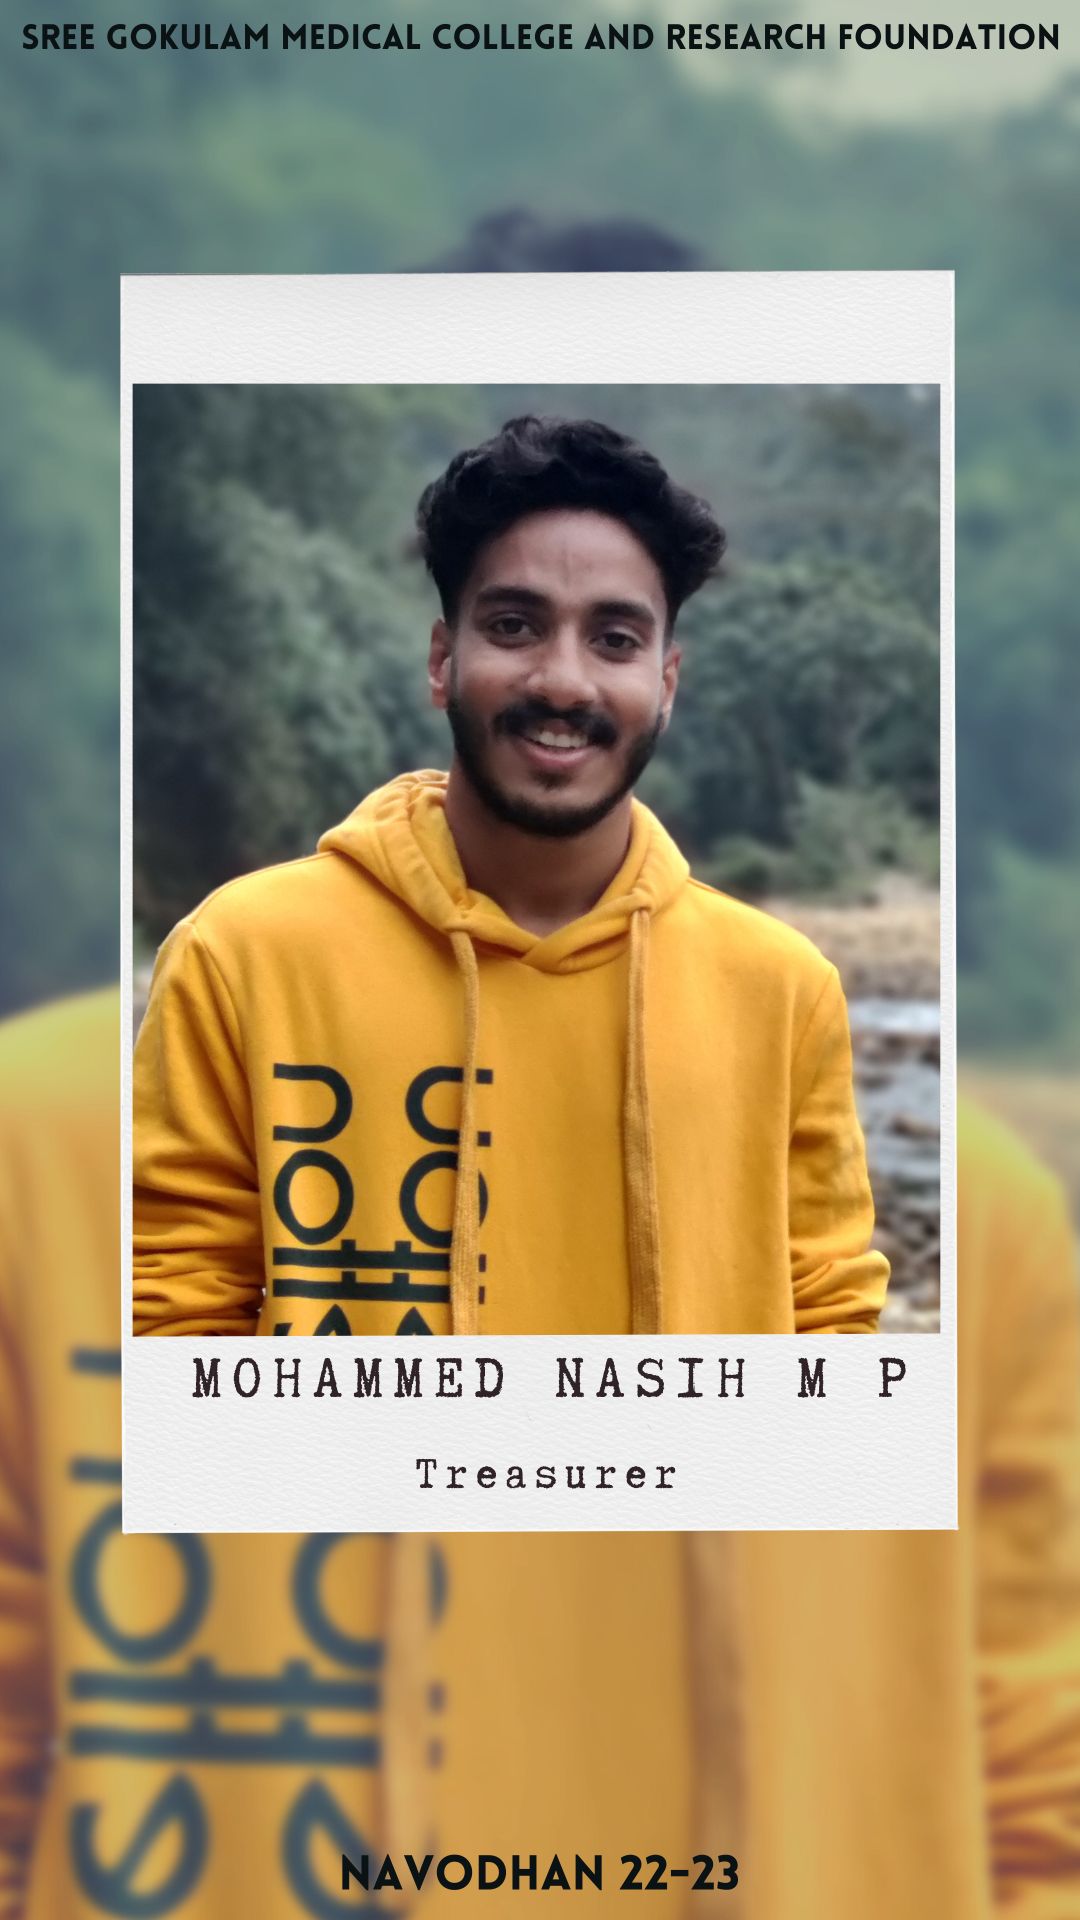 Mohammed Nasih M P